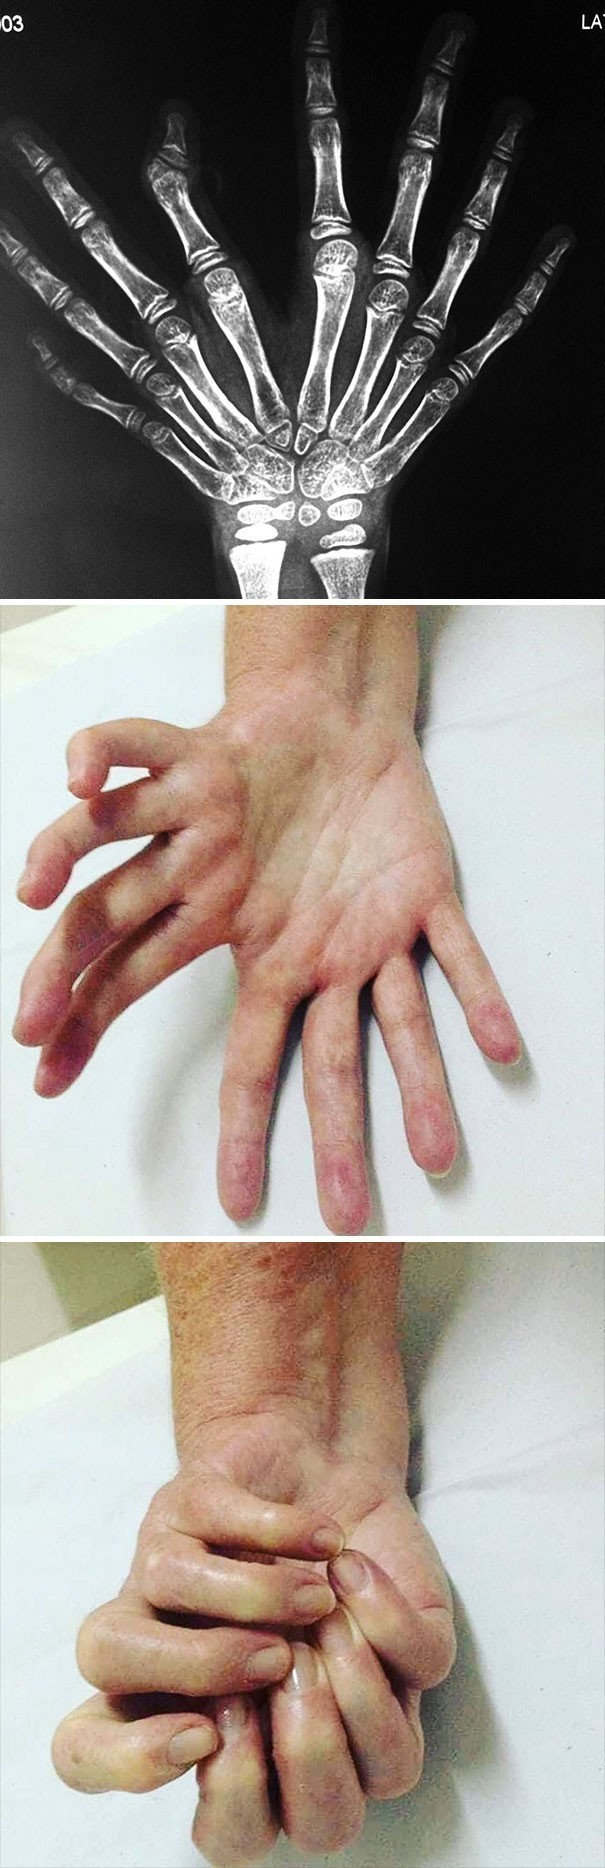 Bardzo rzadka wada wrodzona znana jako "lustrzana dłoń"